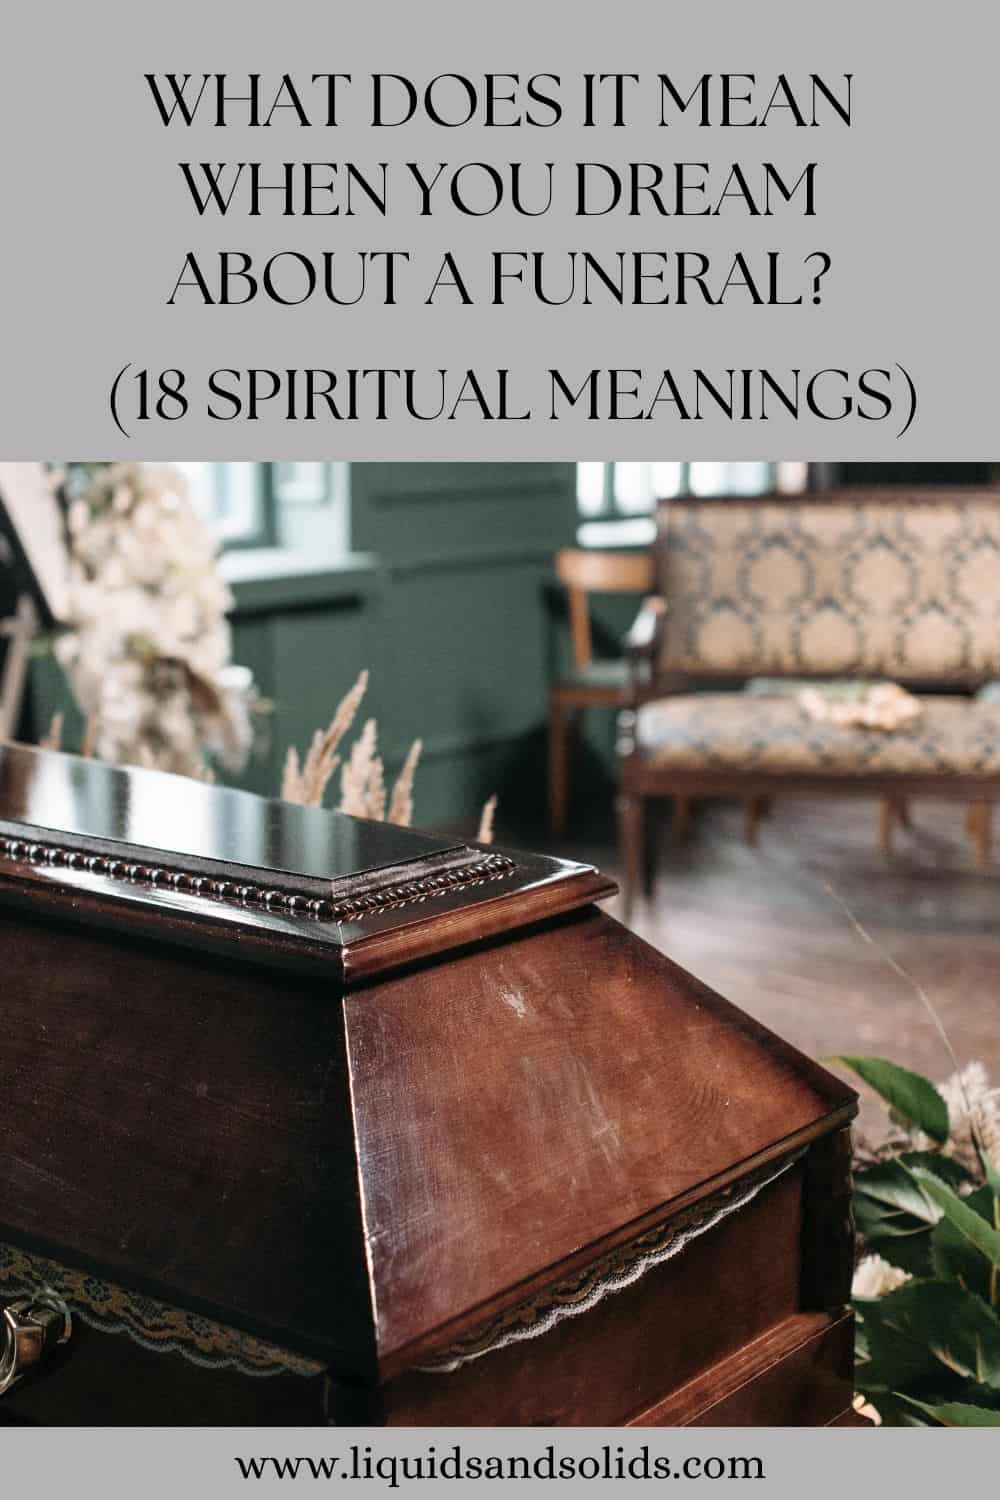  ماذا يعني عندما تحلم بجنازة؟ (18 معاني روحية)